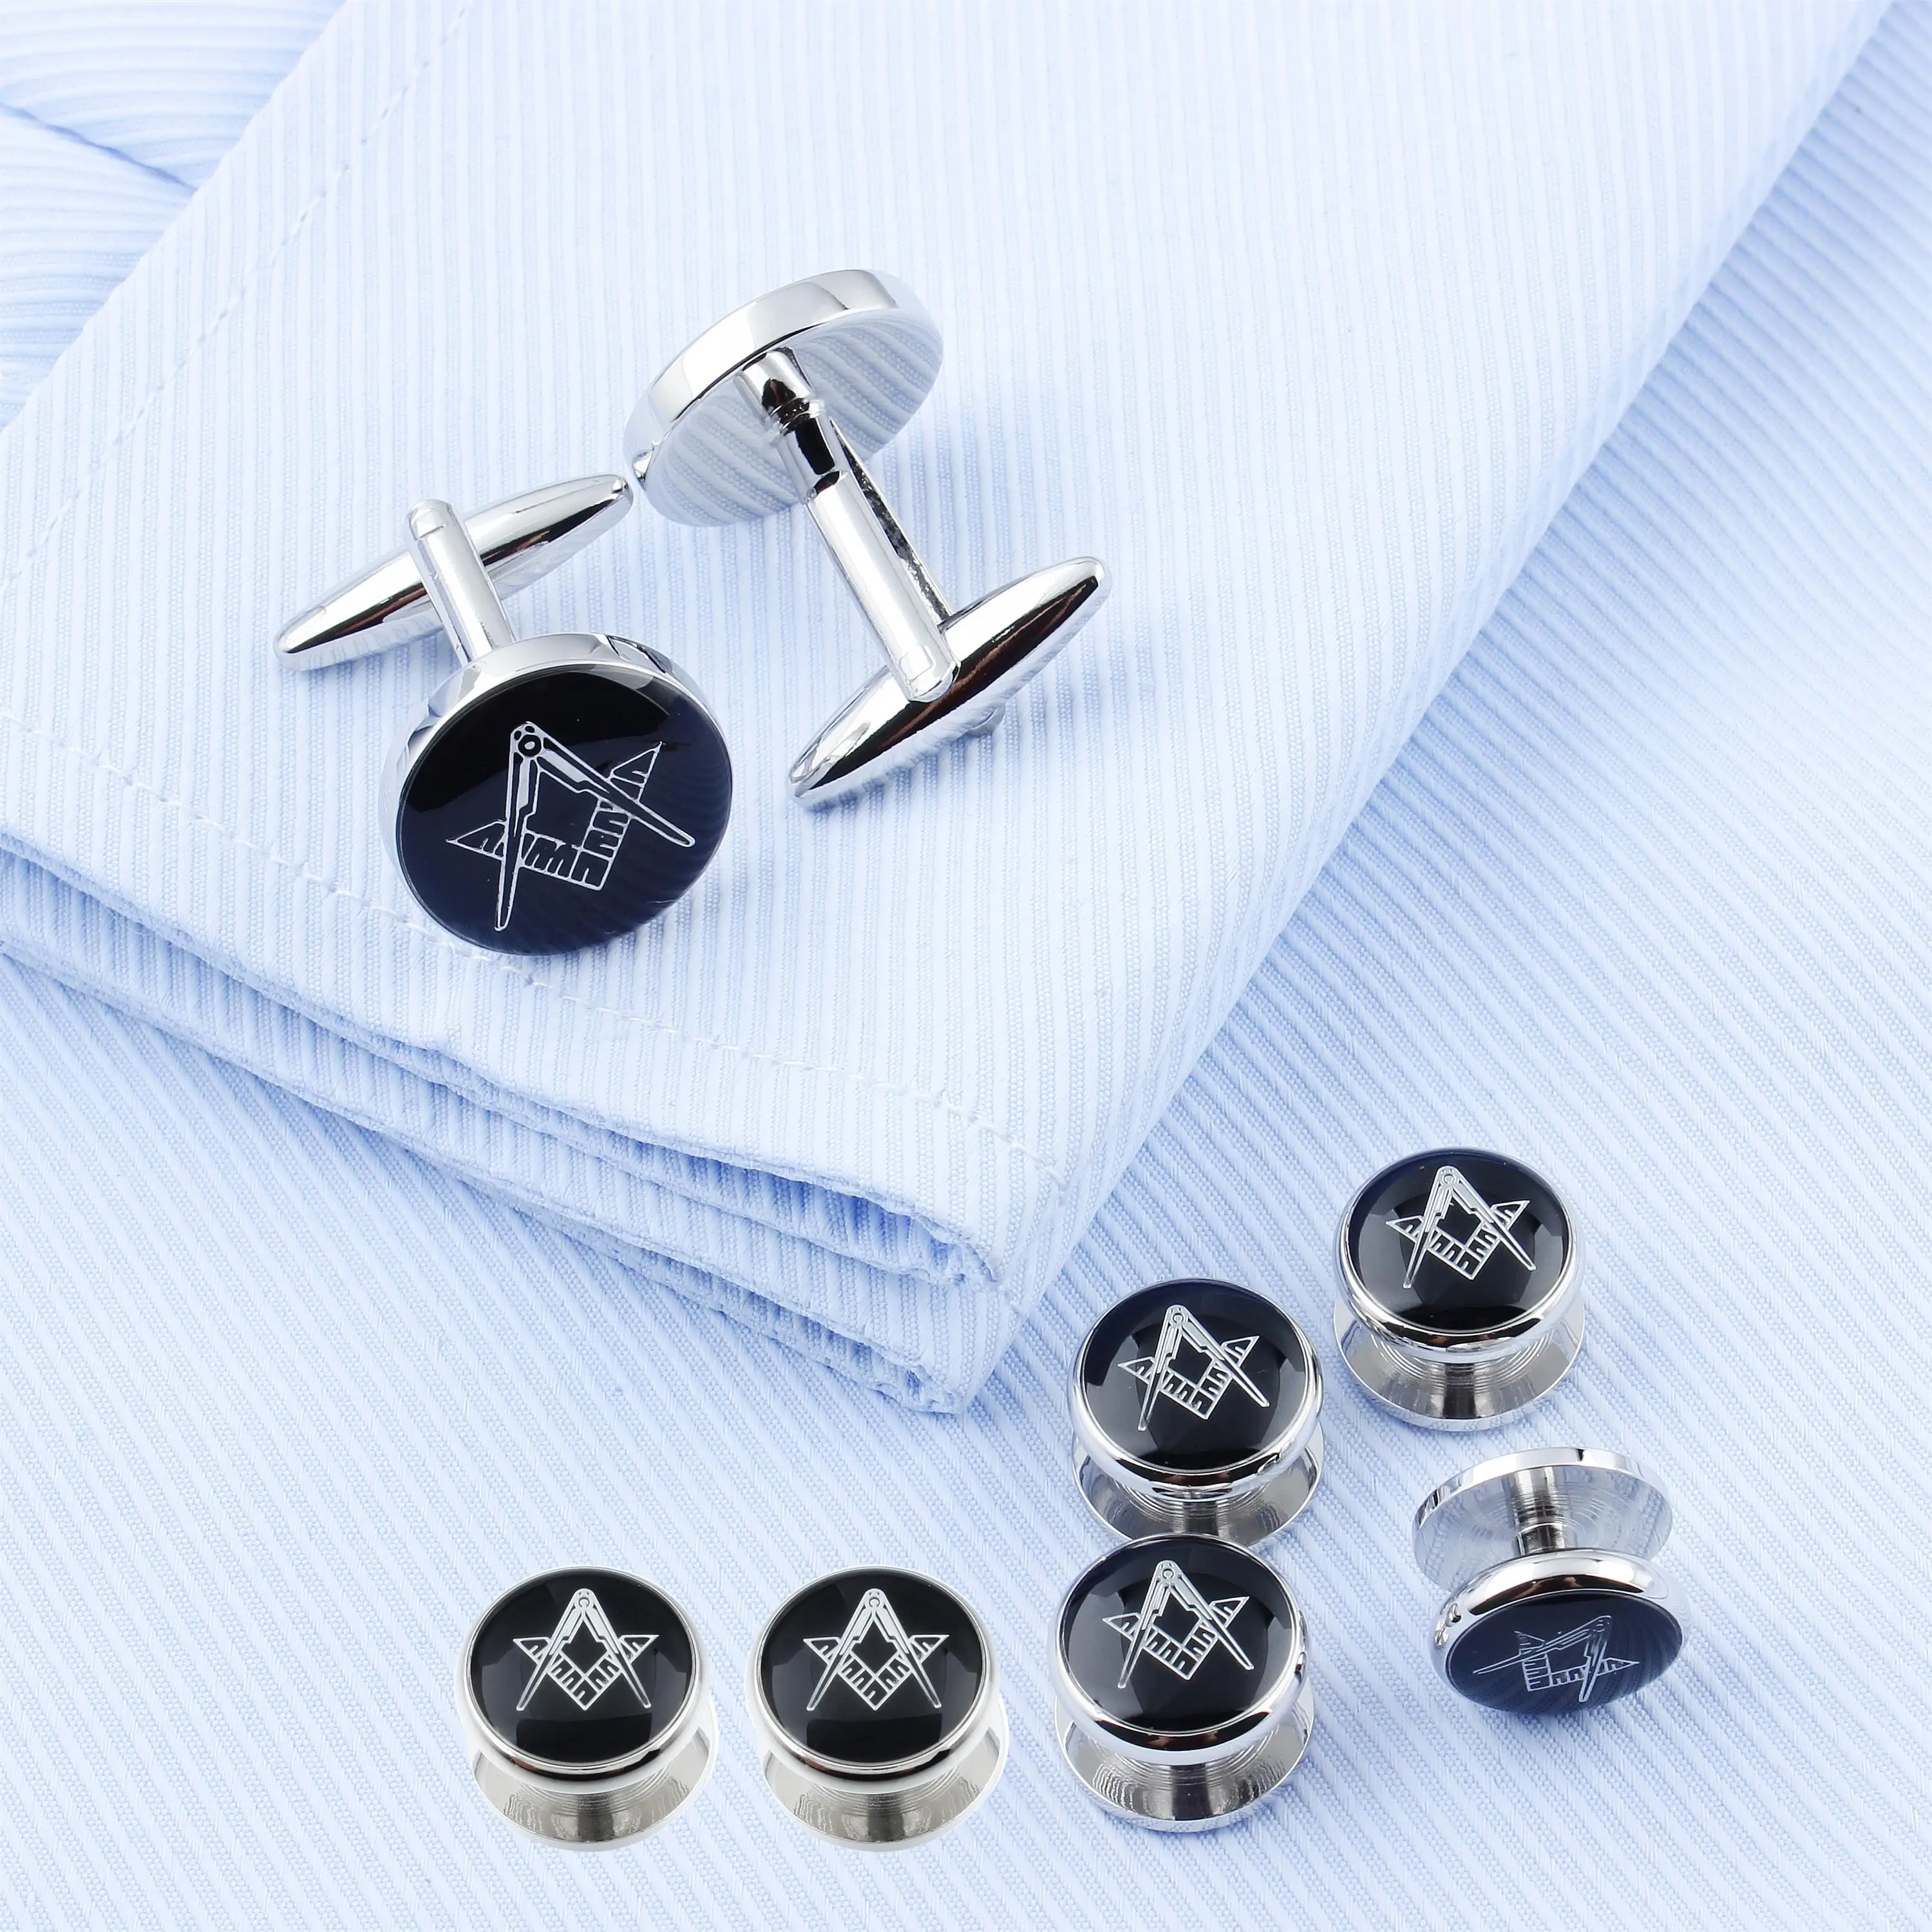 Набор масонских запонок и шпилек для смокинга Freemason для мужчин, упаковано в подарочную коробку, мужские украшения или аксессуары, масонские подарки для мужчин.